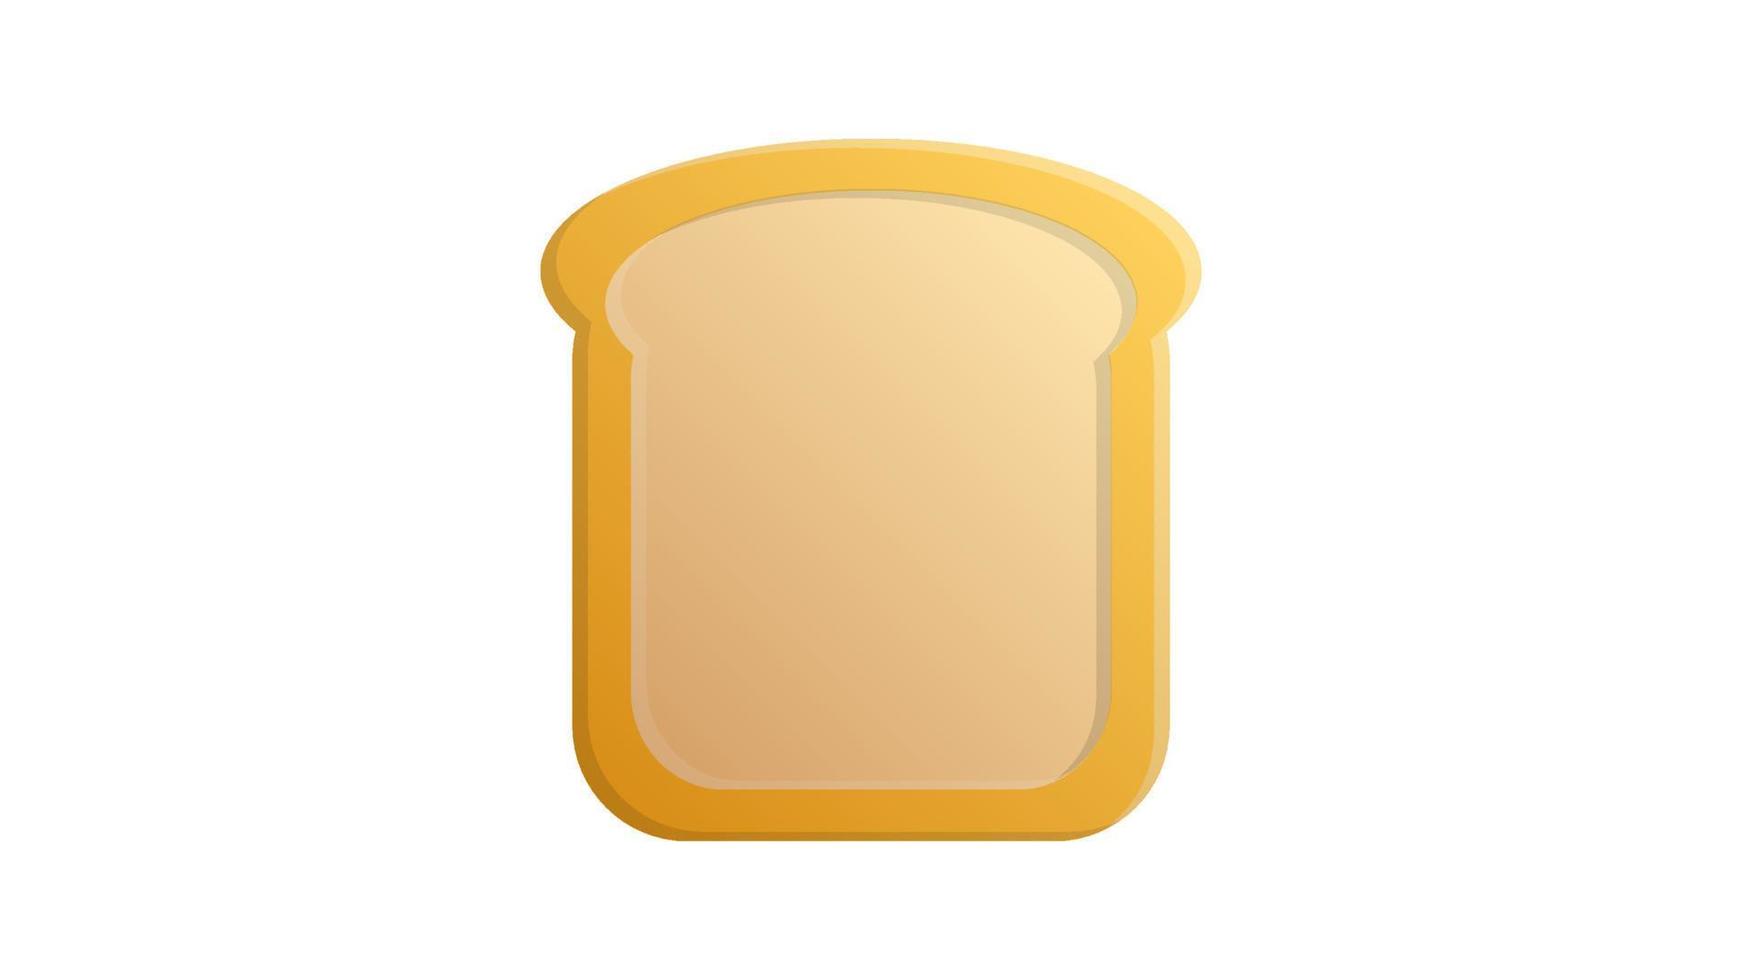 een stuk van brood met een korst Aan een wit achtergrond. vector illustratie met een volumetrisch contour. belegd broodje brood, baseren voor een gevulde Sandwich. tekening met voedsel, een stuk van wit brood